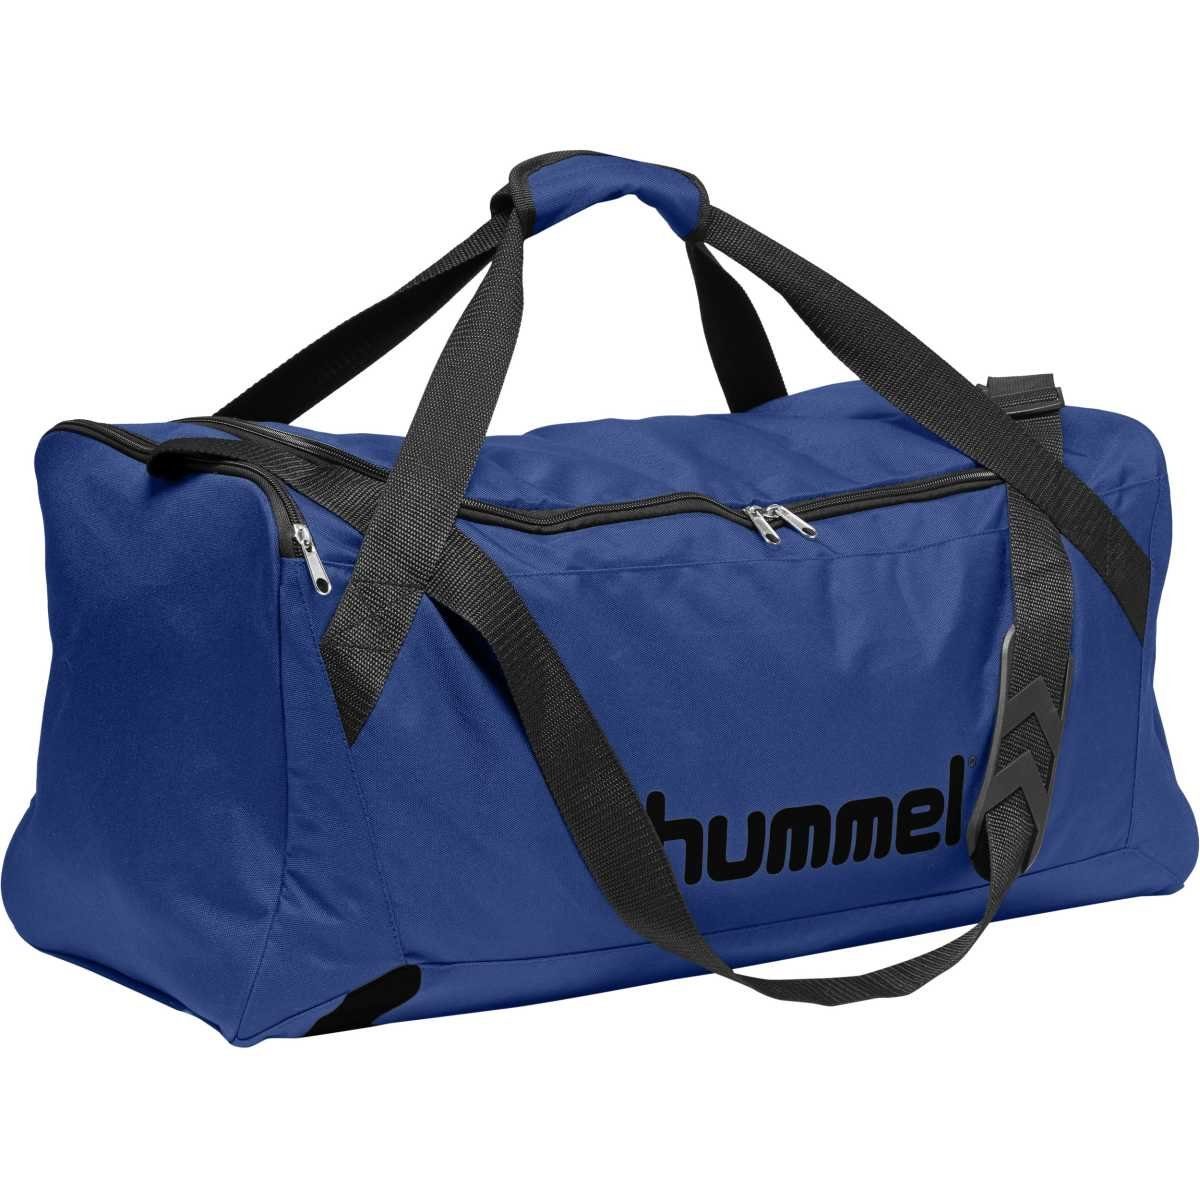 Bevidst imperium couscous hummel Sporttasche »Hummel Core Sports Bag«, mit gepolstertem Tragegriff  online kaufen | OTTO